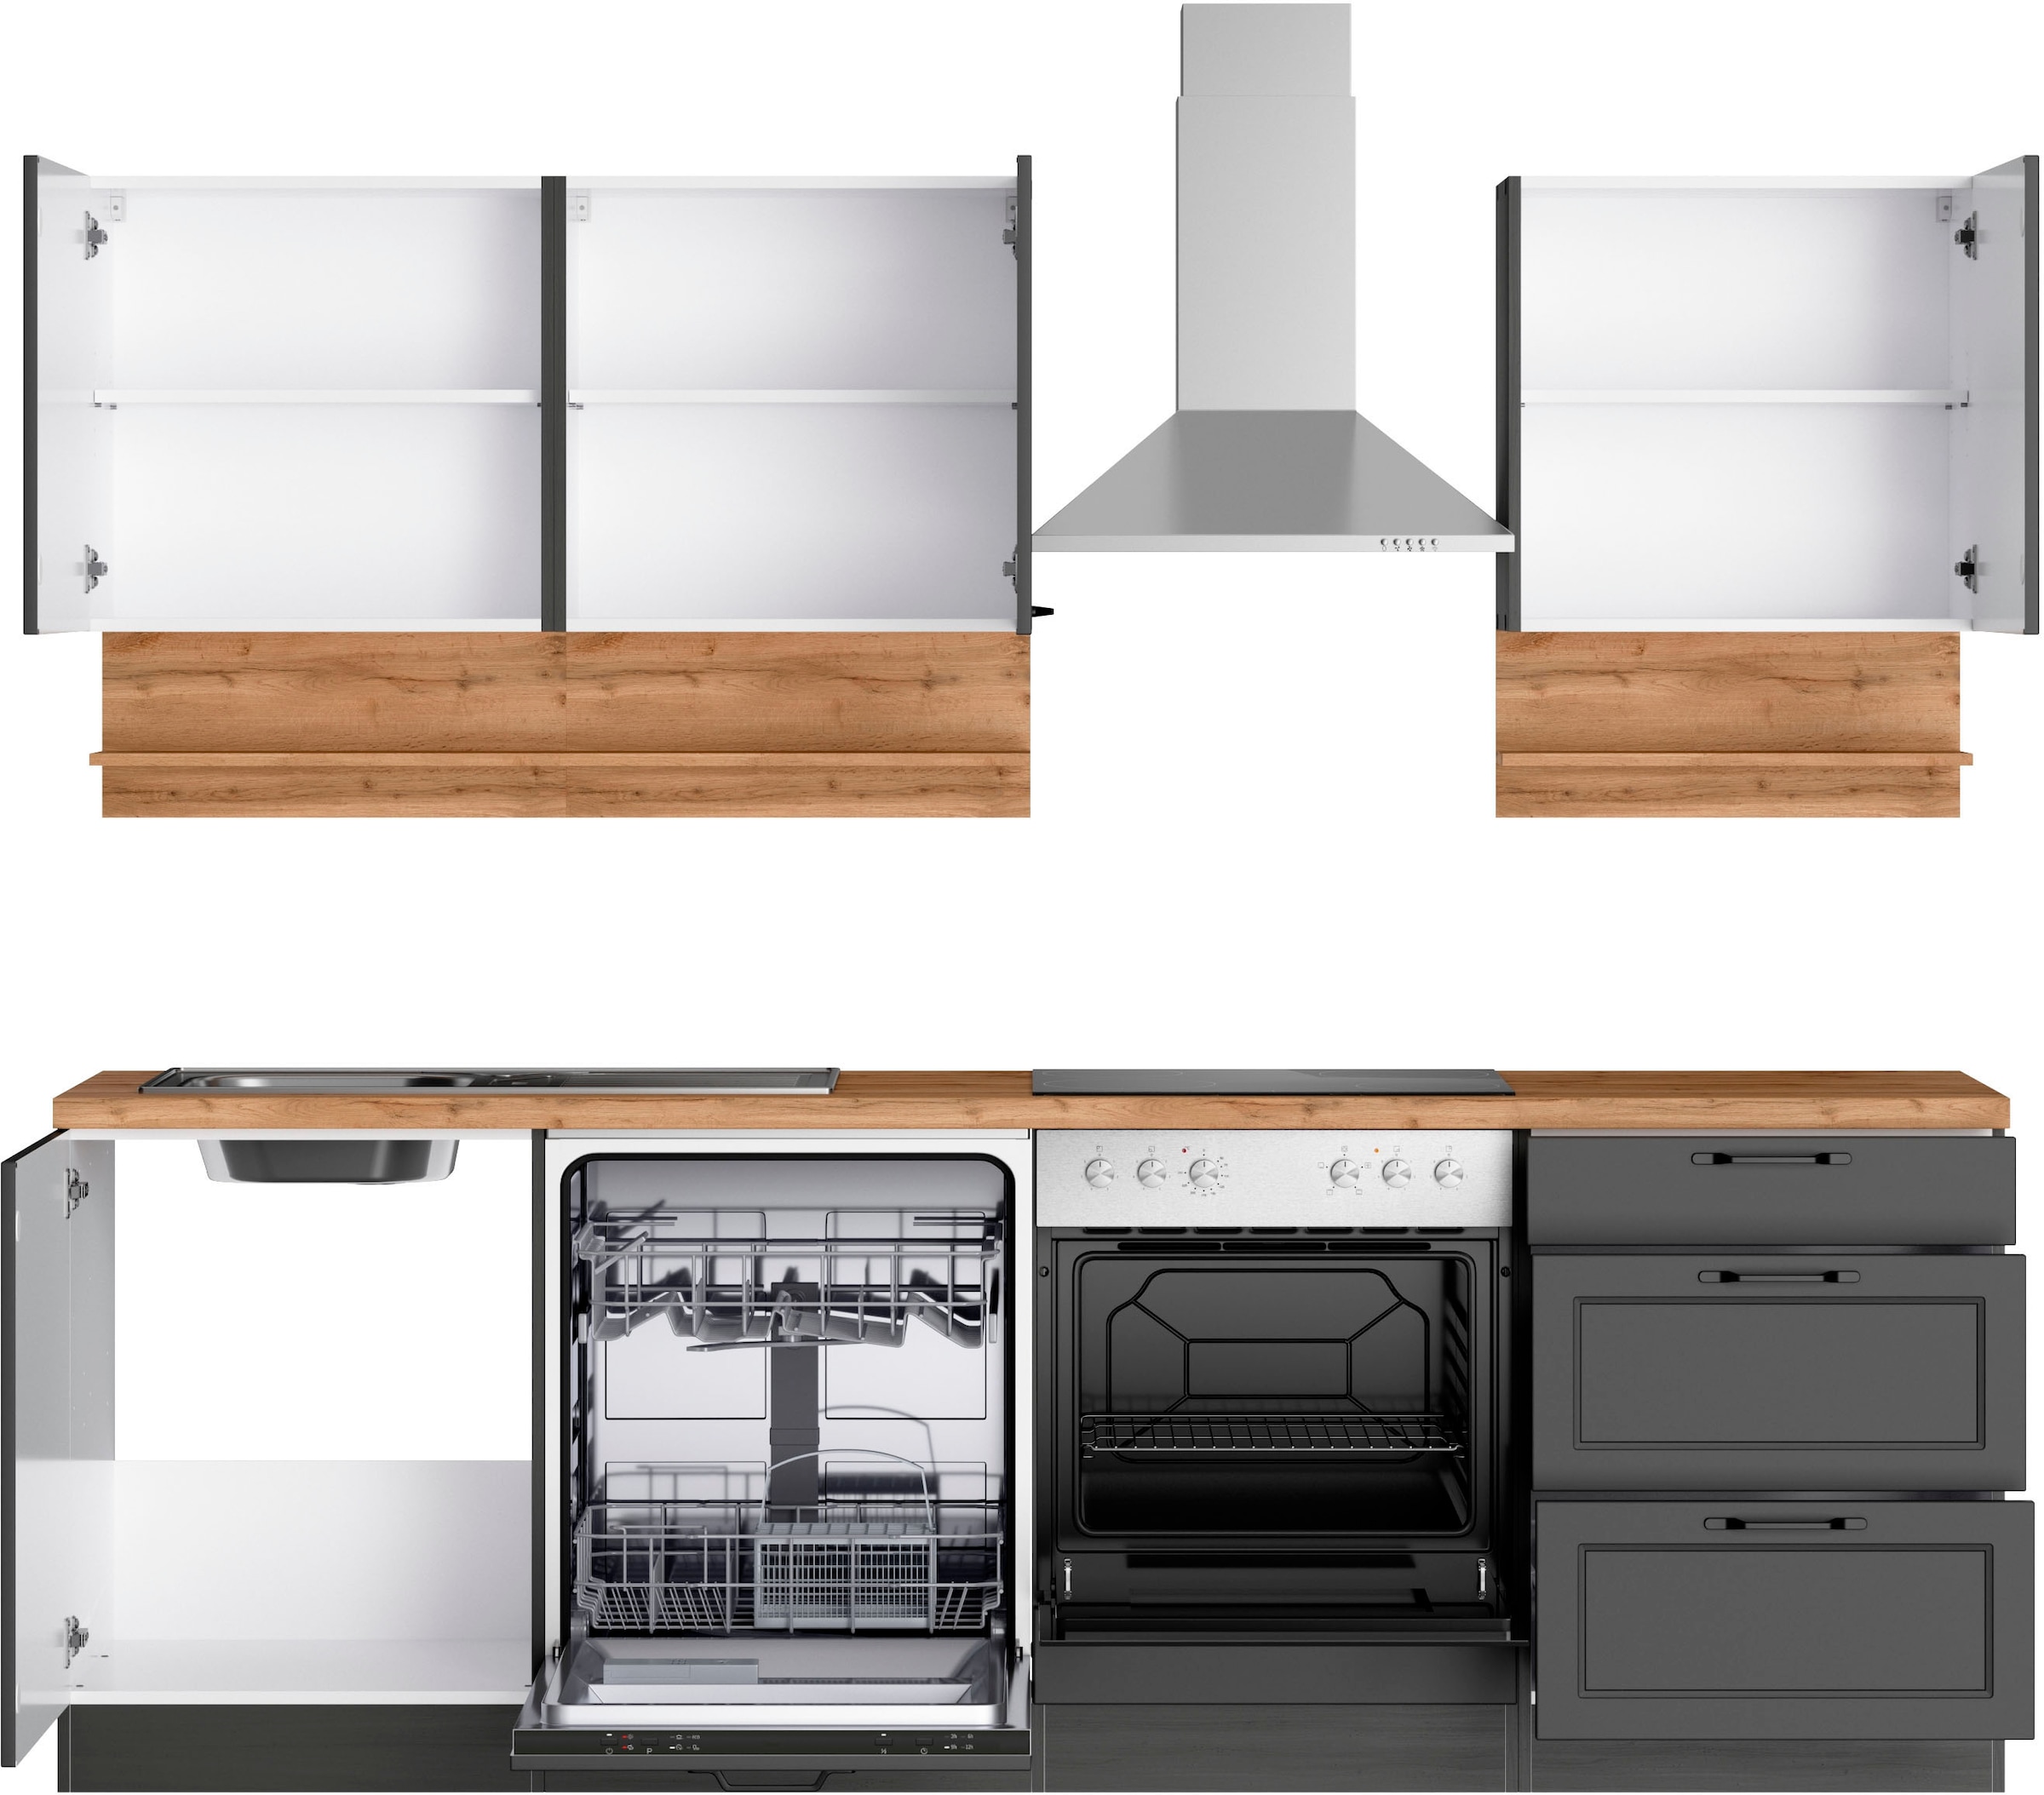 Kochstation Küche »KS-Lana«, 240 cm breit, wahlweise mit oder ohne E-Geräte